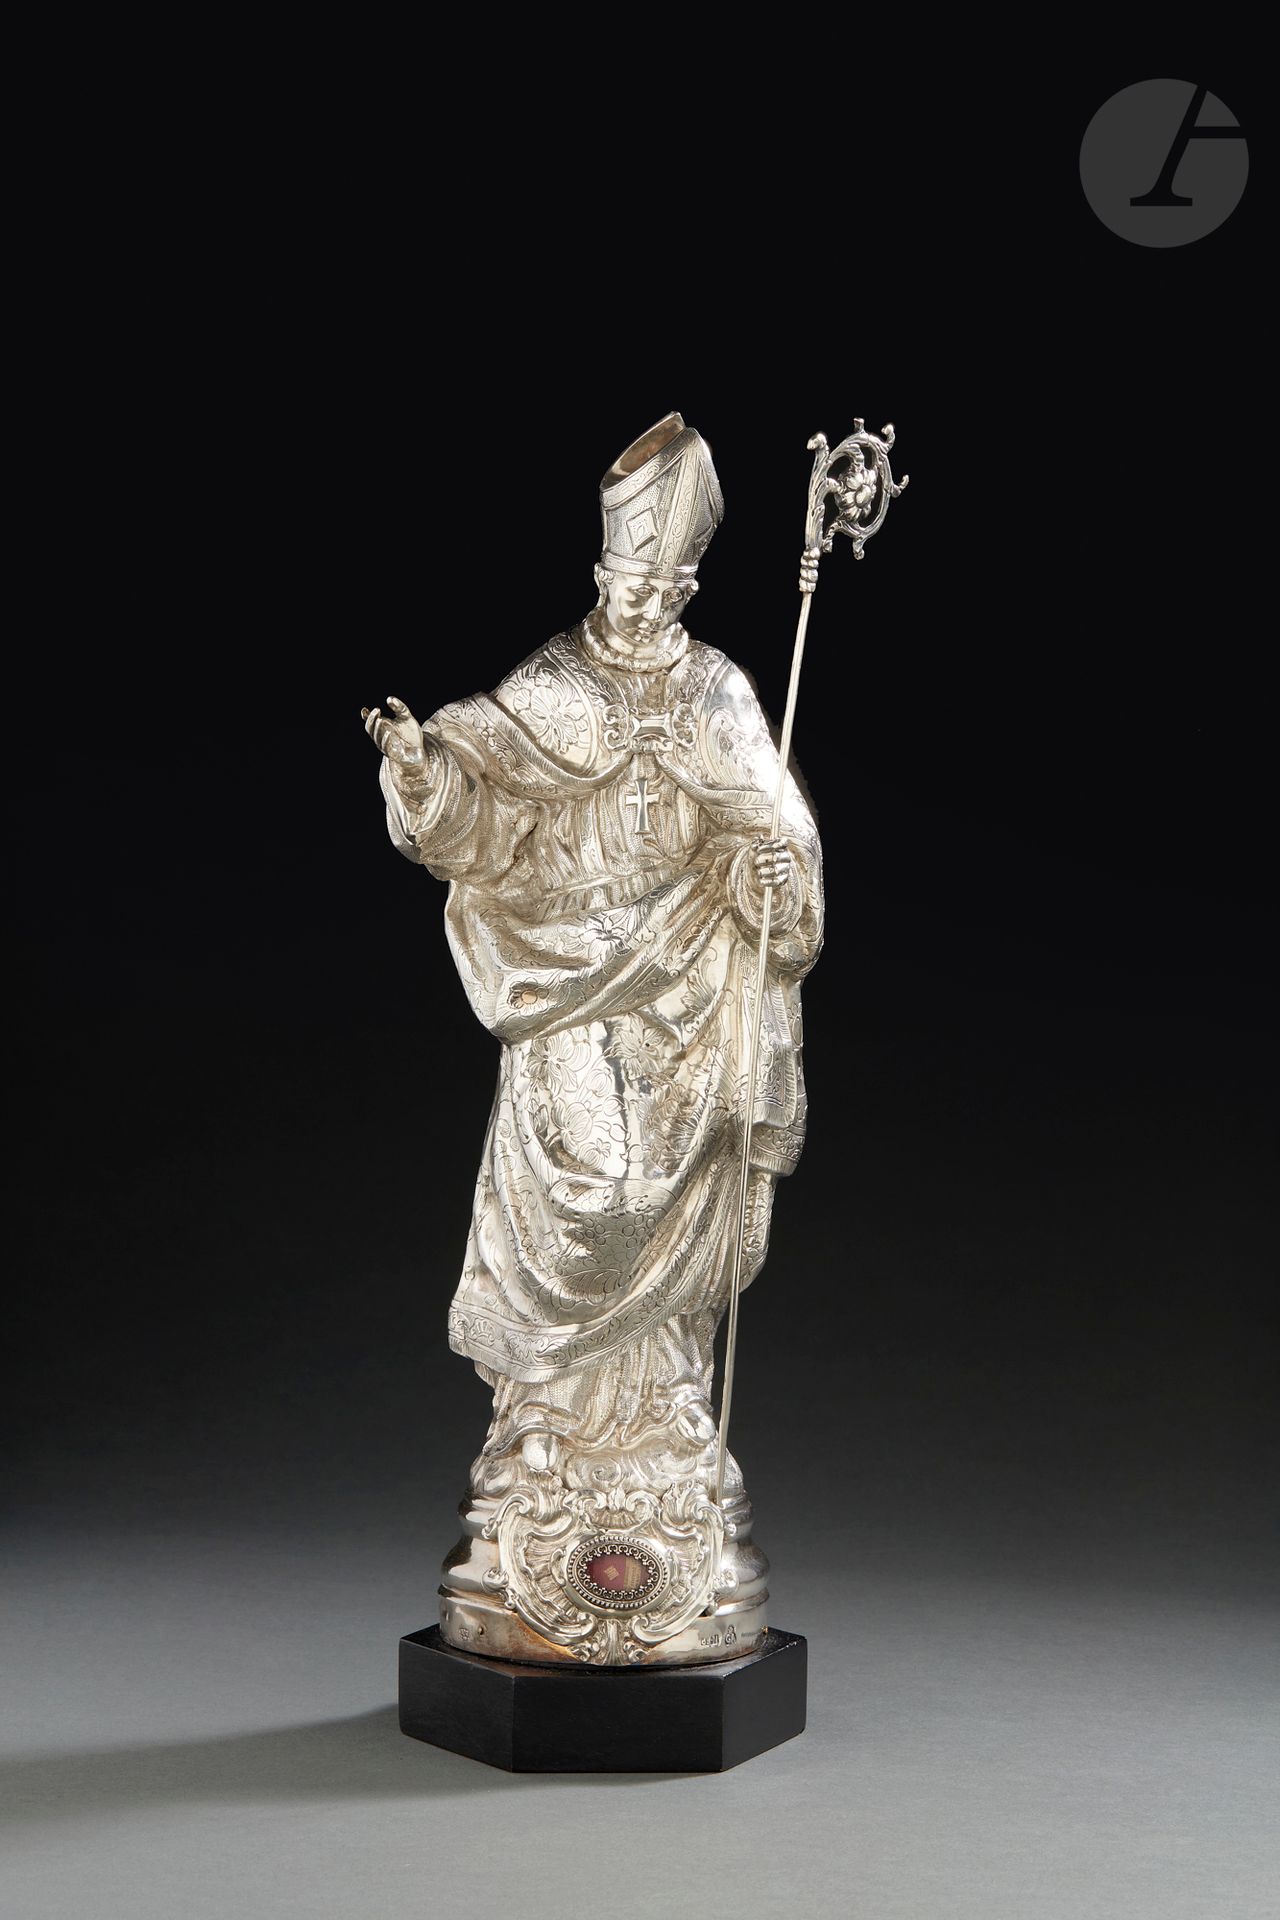 Null ORIGINE INDÉTERMINÉE XIXe SIÈCLE
Sculpture d’un évêque en ronde-bosse porta&hellip;